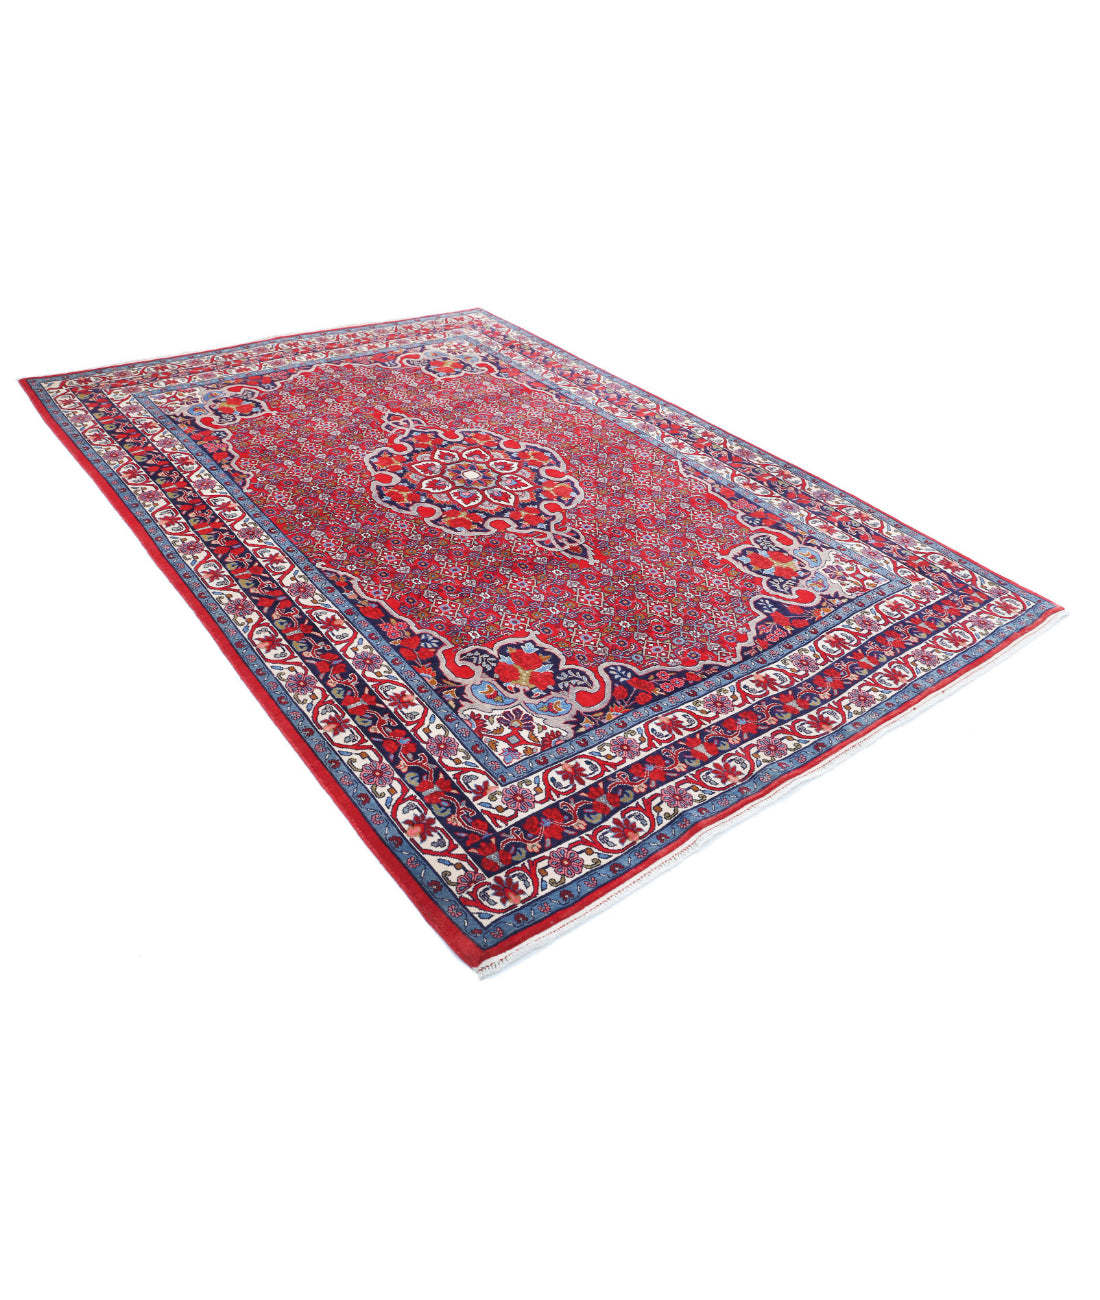 Hand Knotted Persian Bijar Wool Rug - 6'9'' x 9'8'' 6'9'' x 9'8'' (203 X 290) / Red / Blue